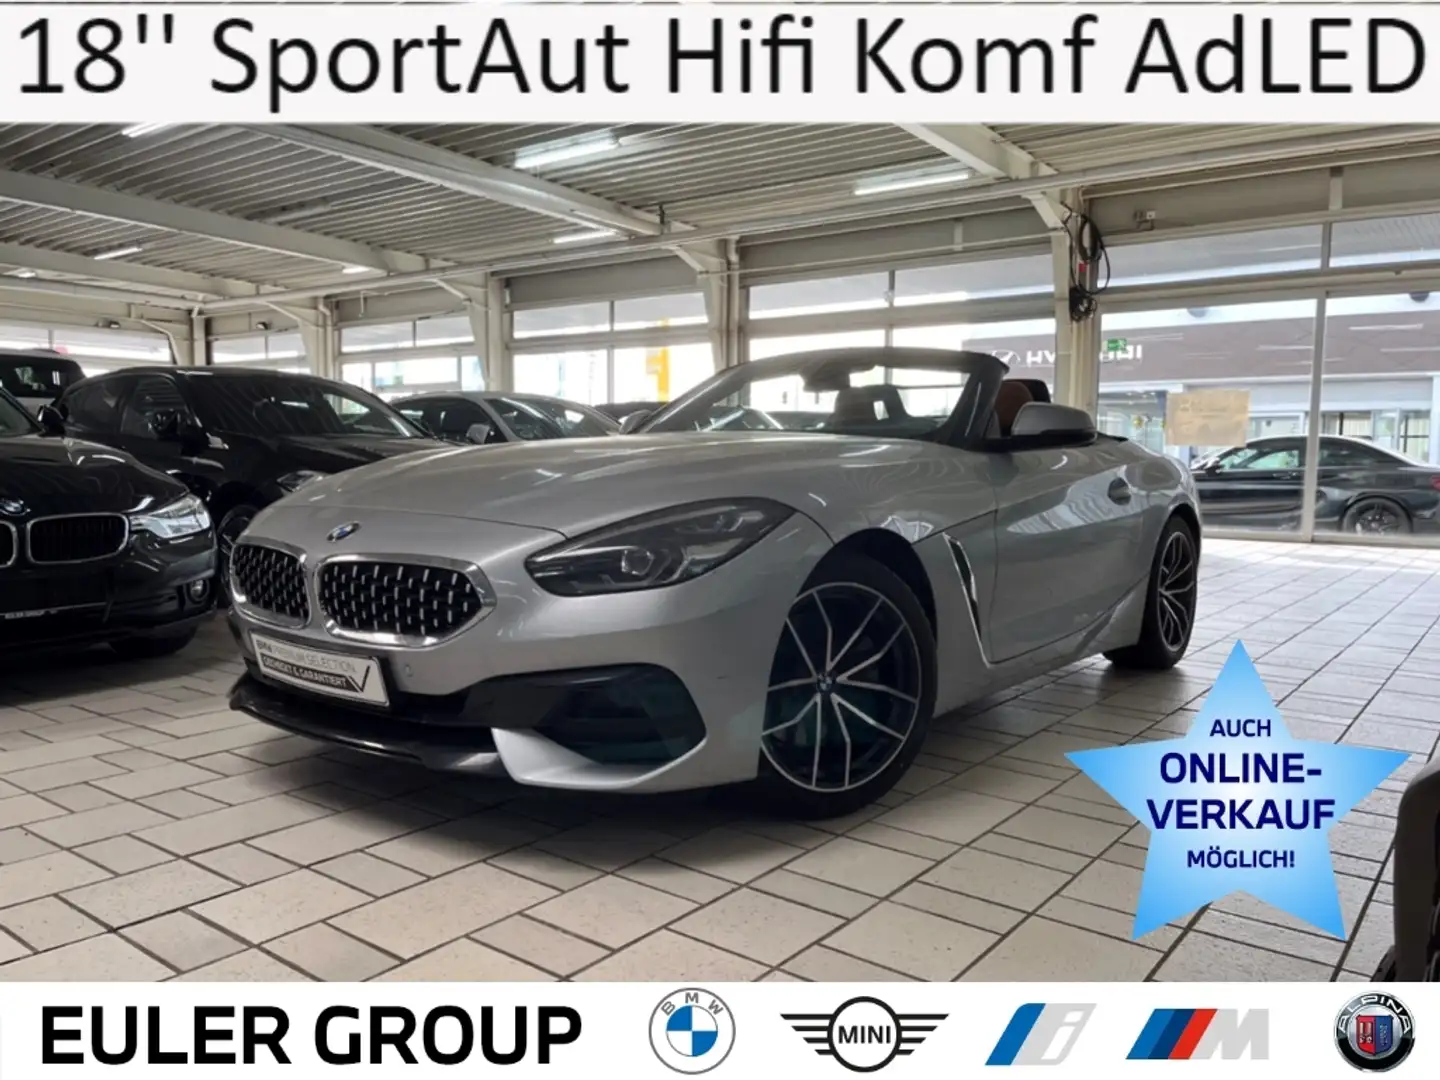 BMW Z4 20i Sport Line 18'' SportAut Hifi Leder Komf AdLED Zilver - 1